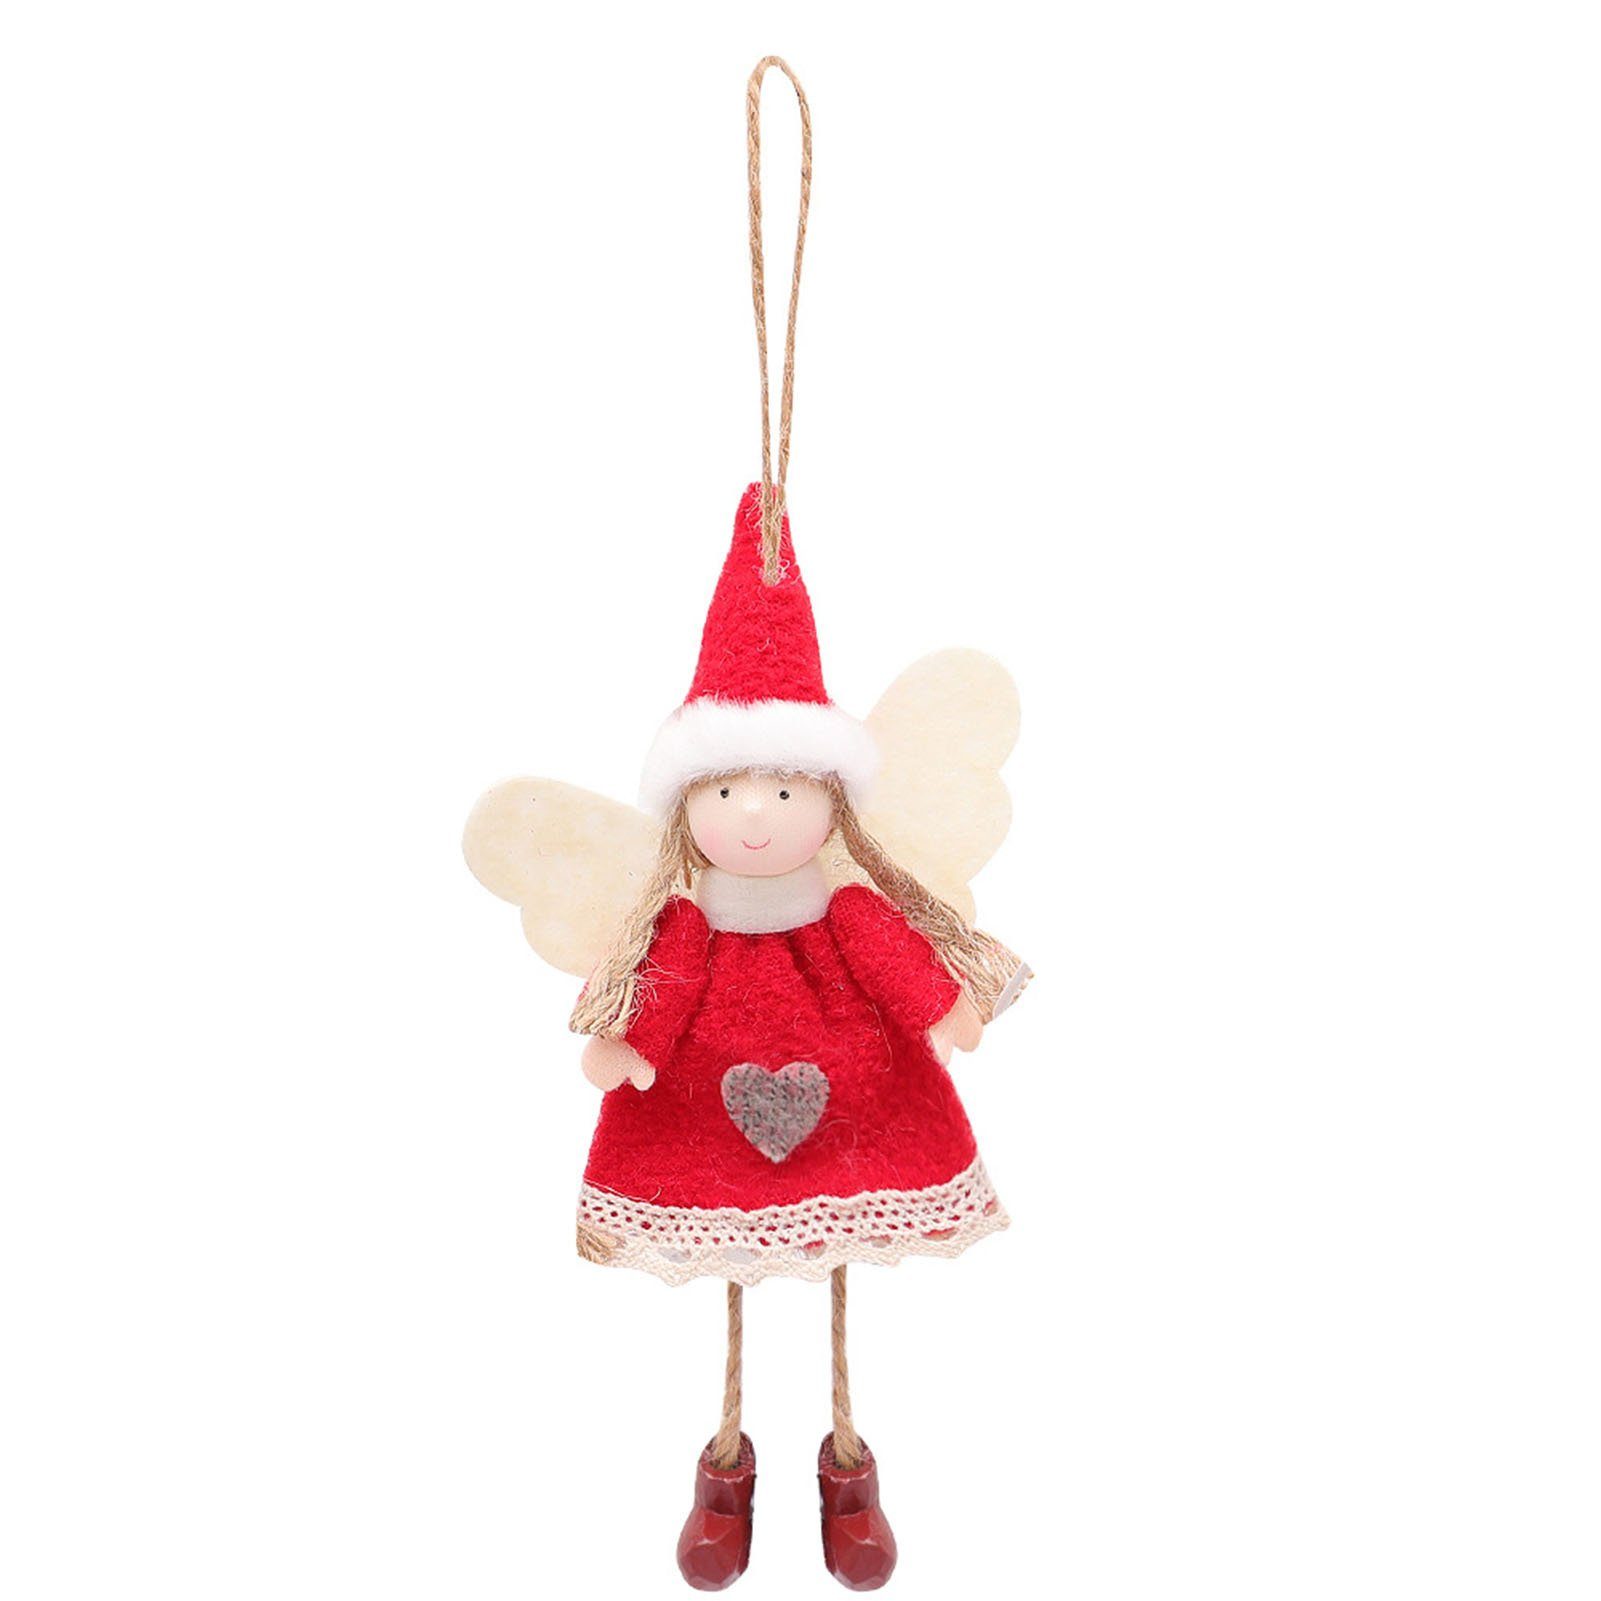 Blusmart Christbaumschmuck Weihnachten Handgemachte Engel-Form Kunsthandwerk Modische red dress